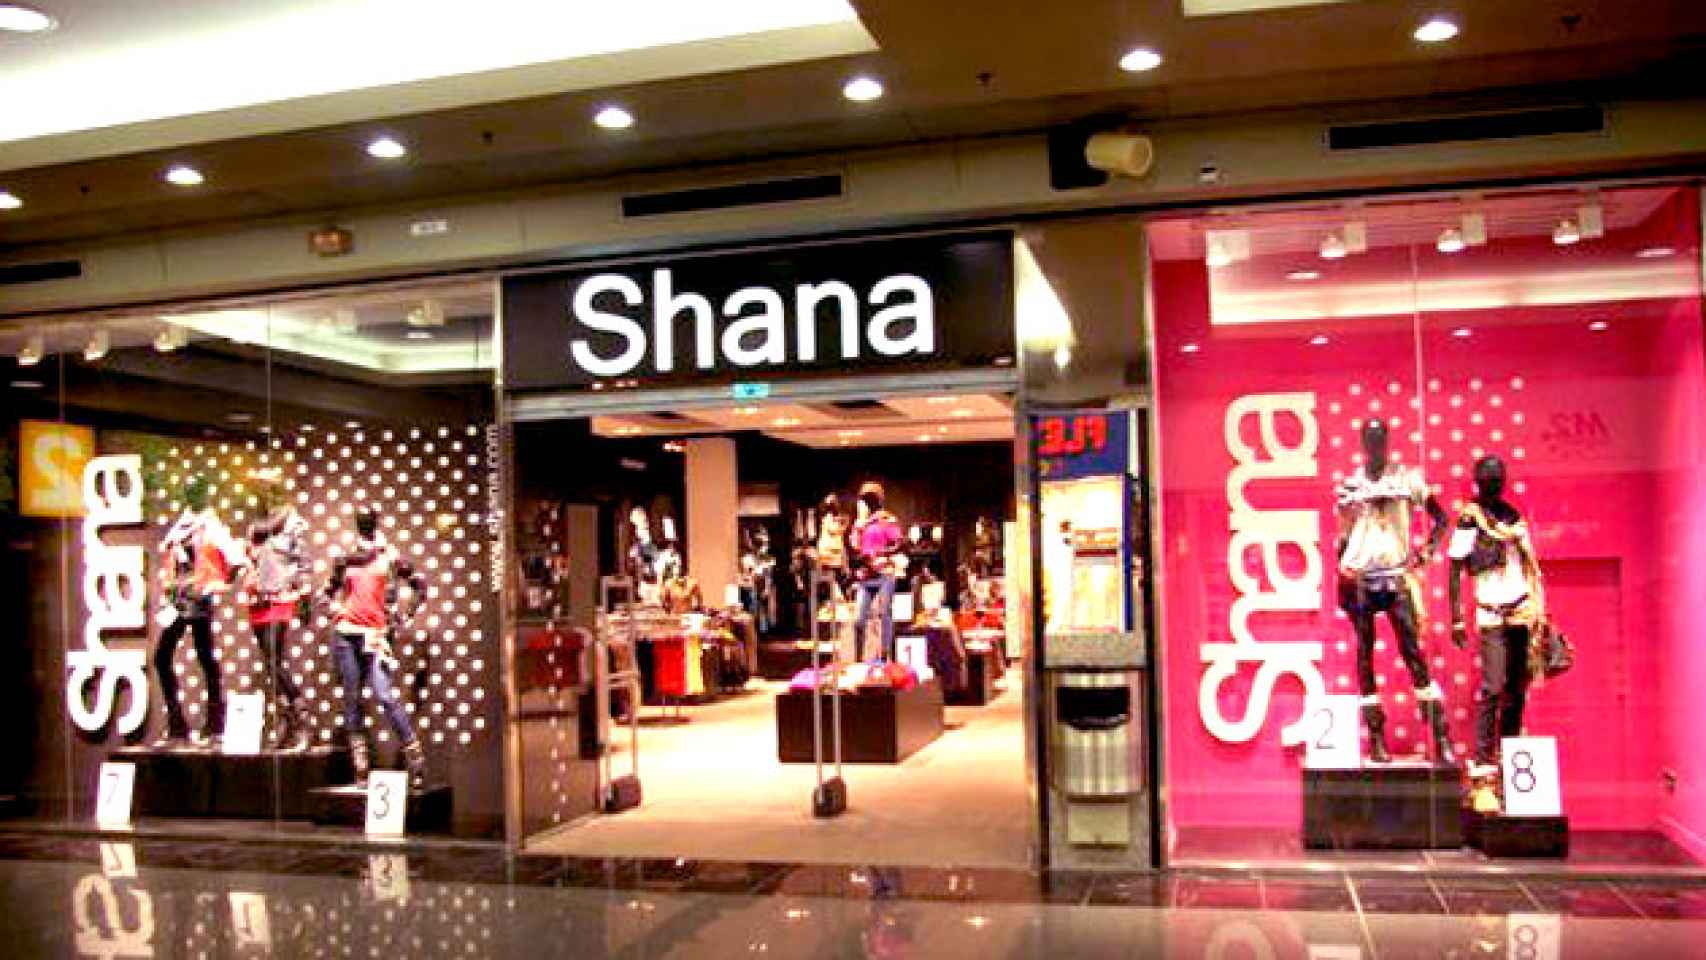 Una de las tiendas de la marca Shana en un centro comercial / CG